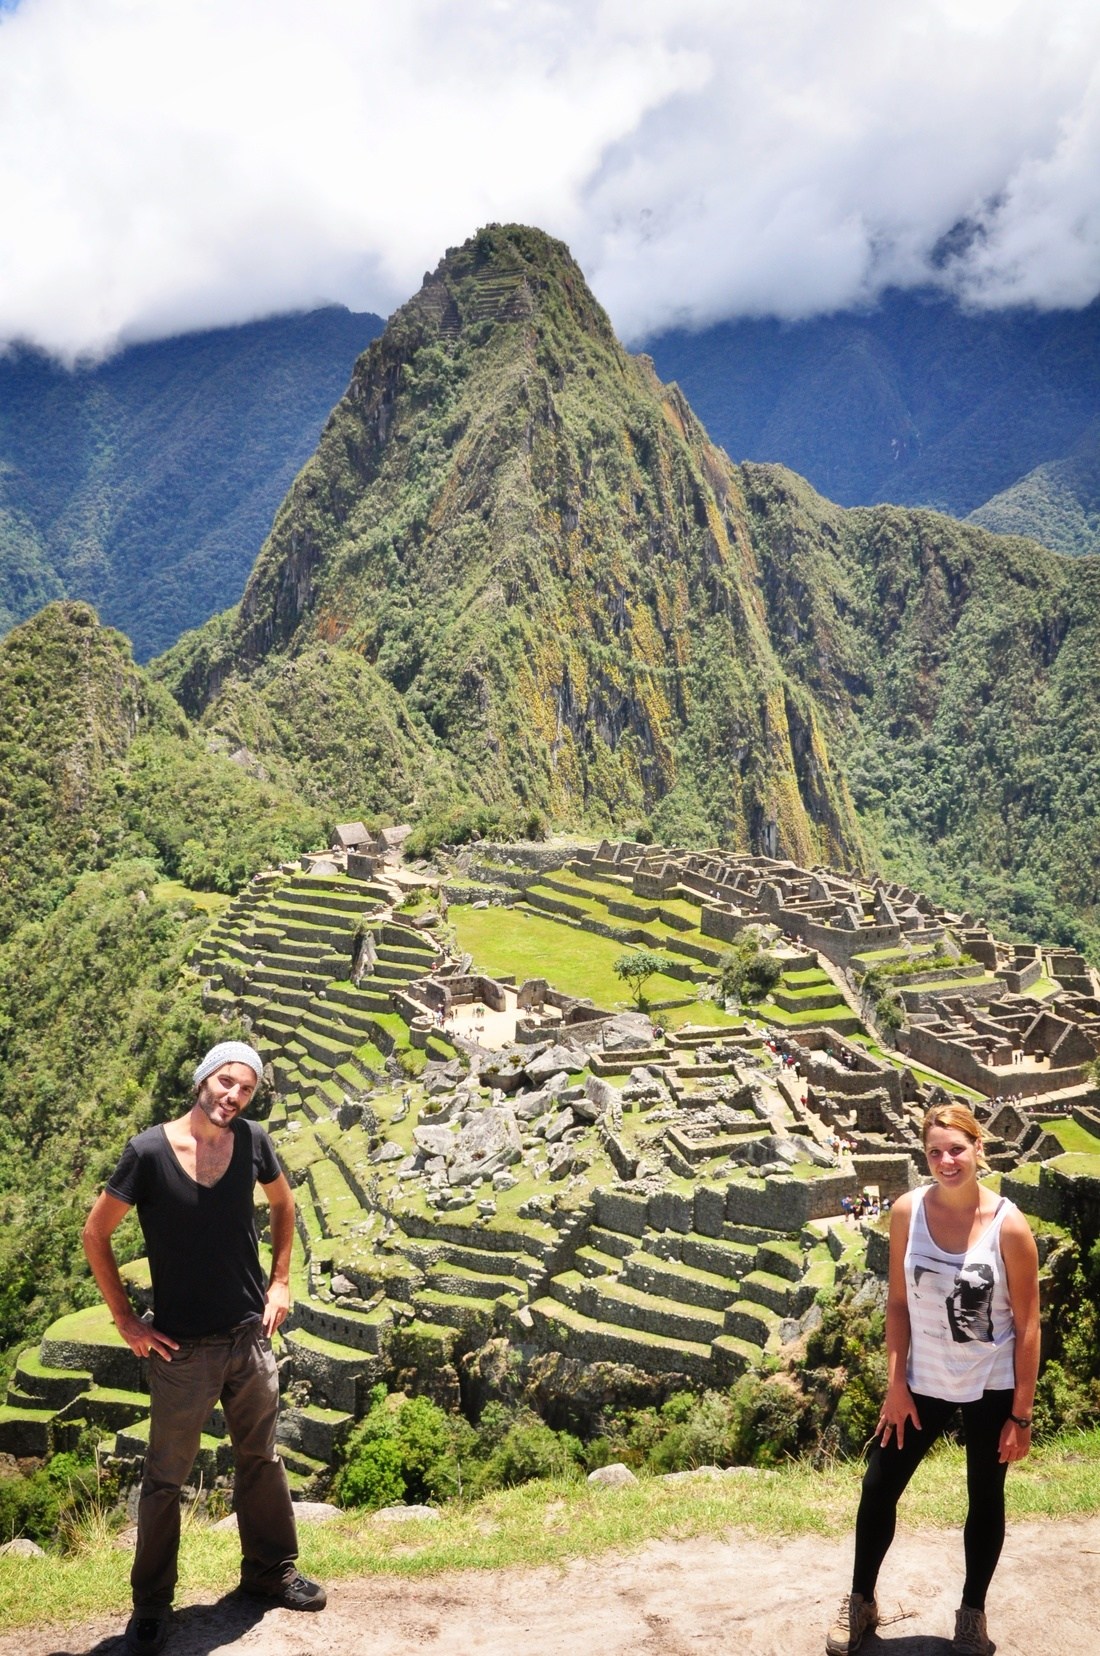 On the Machu Picchu